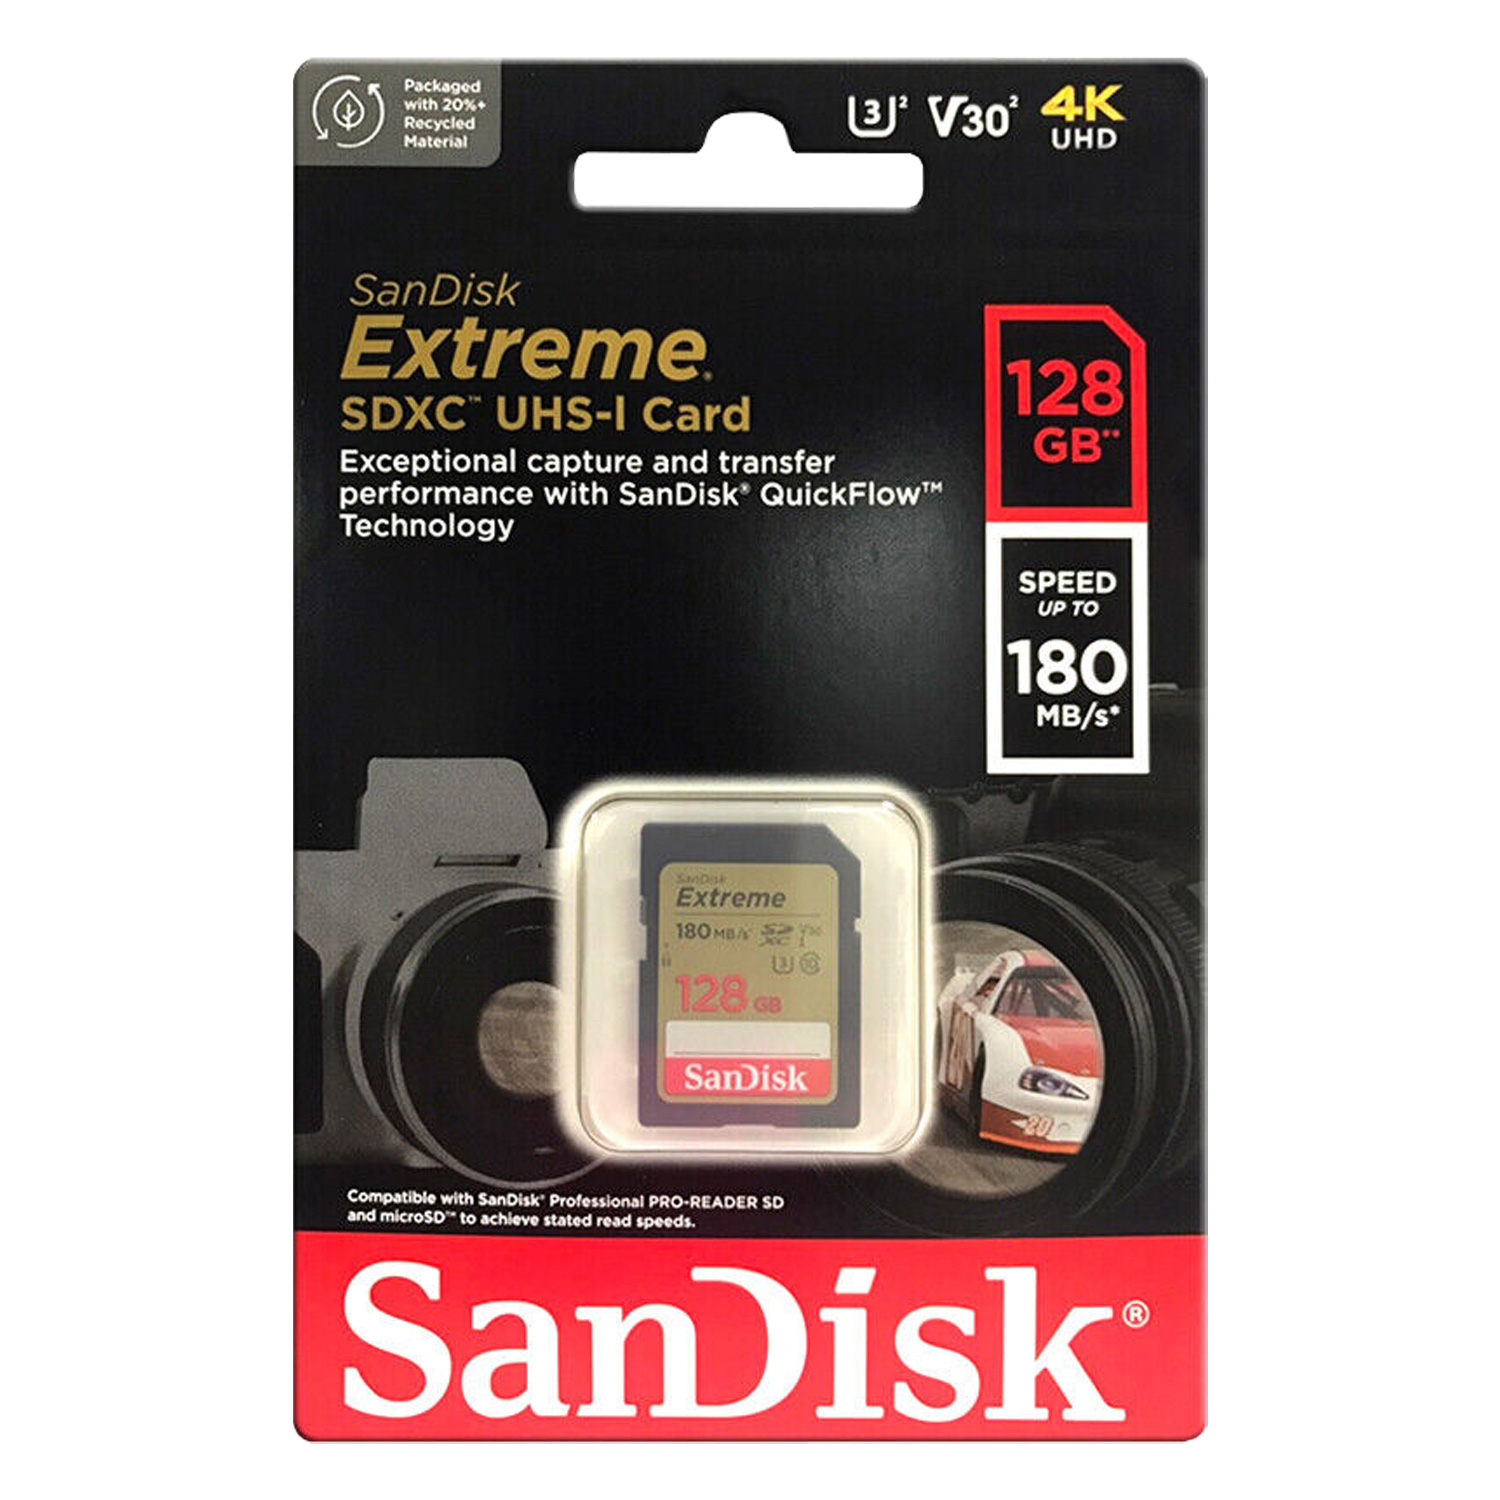 Cartão de Memória Sandisk Extreme 128GB / U3 / 180MBs - (SDSDXVA-128G-GNCIN)
